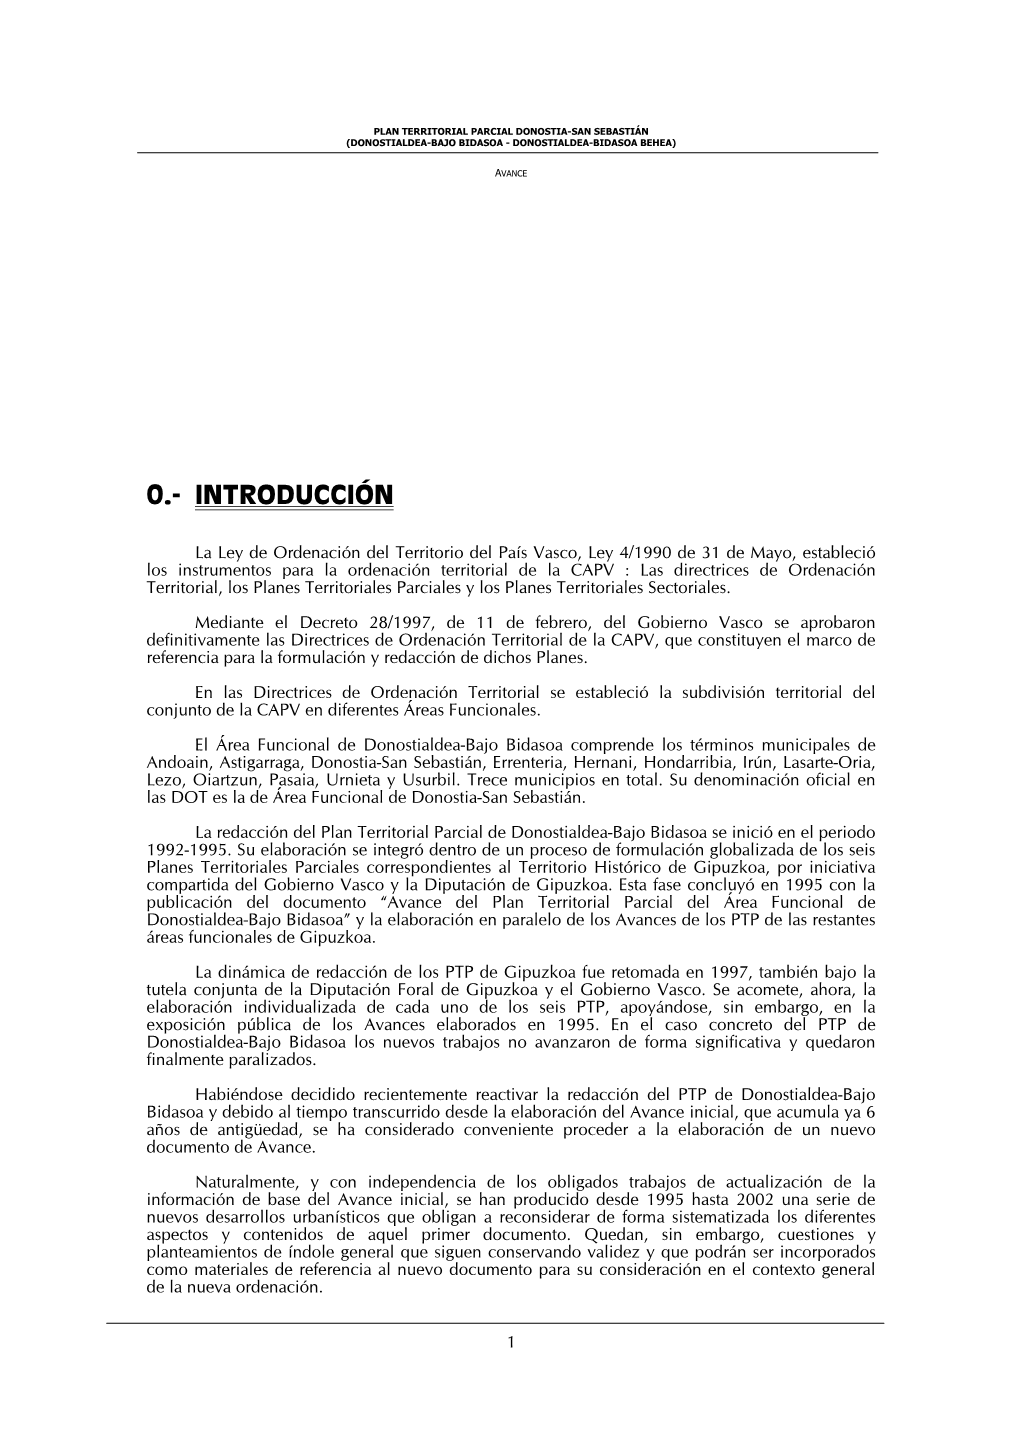 Plan Territorial Parcial De Donostialdea-Bajo Bidasoa Se Inició En El Periodo 1992-1995